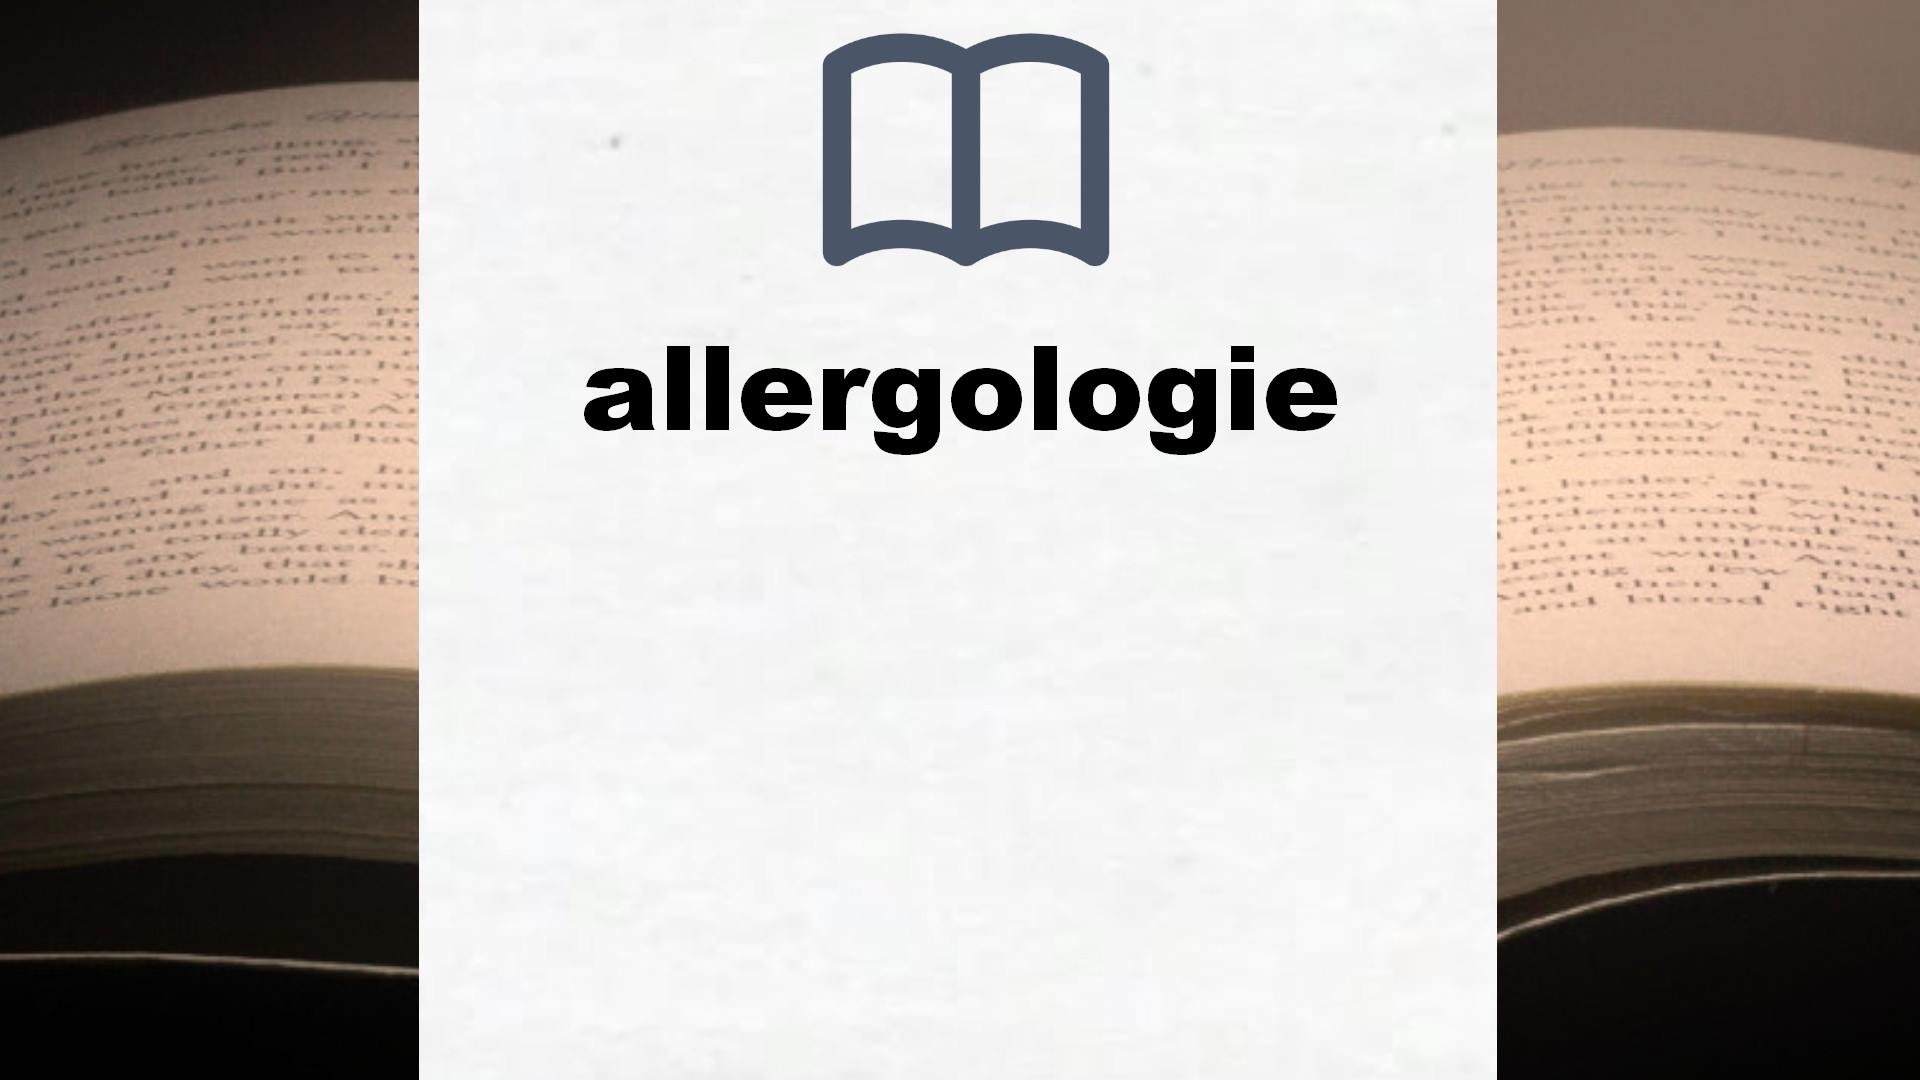 Bücher über allergologie